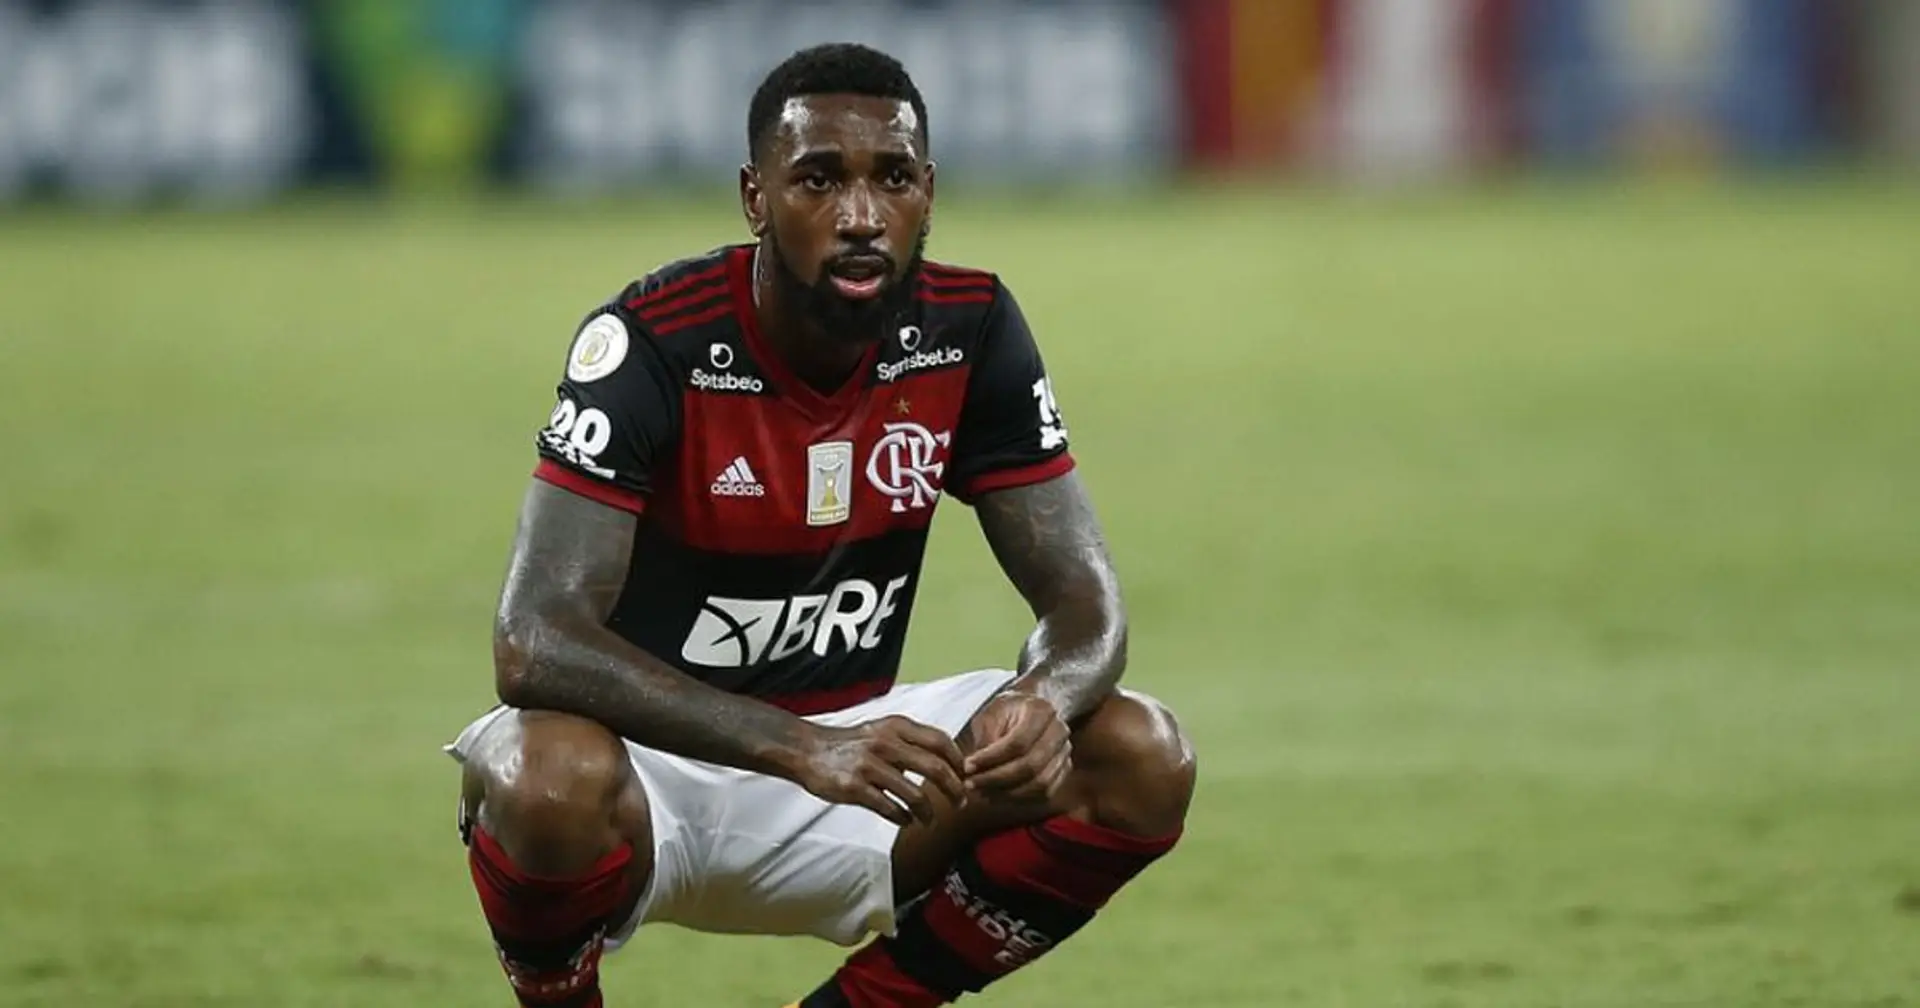 "Chiudi la bocca negro", l'ex Roma Gerson insultato durante Flamengo-Bahia